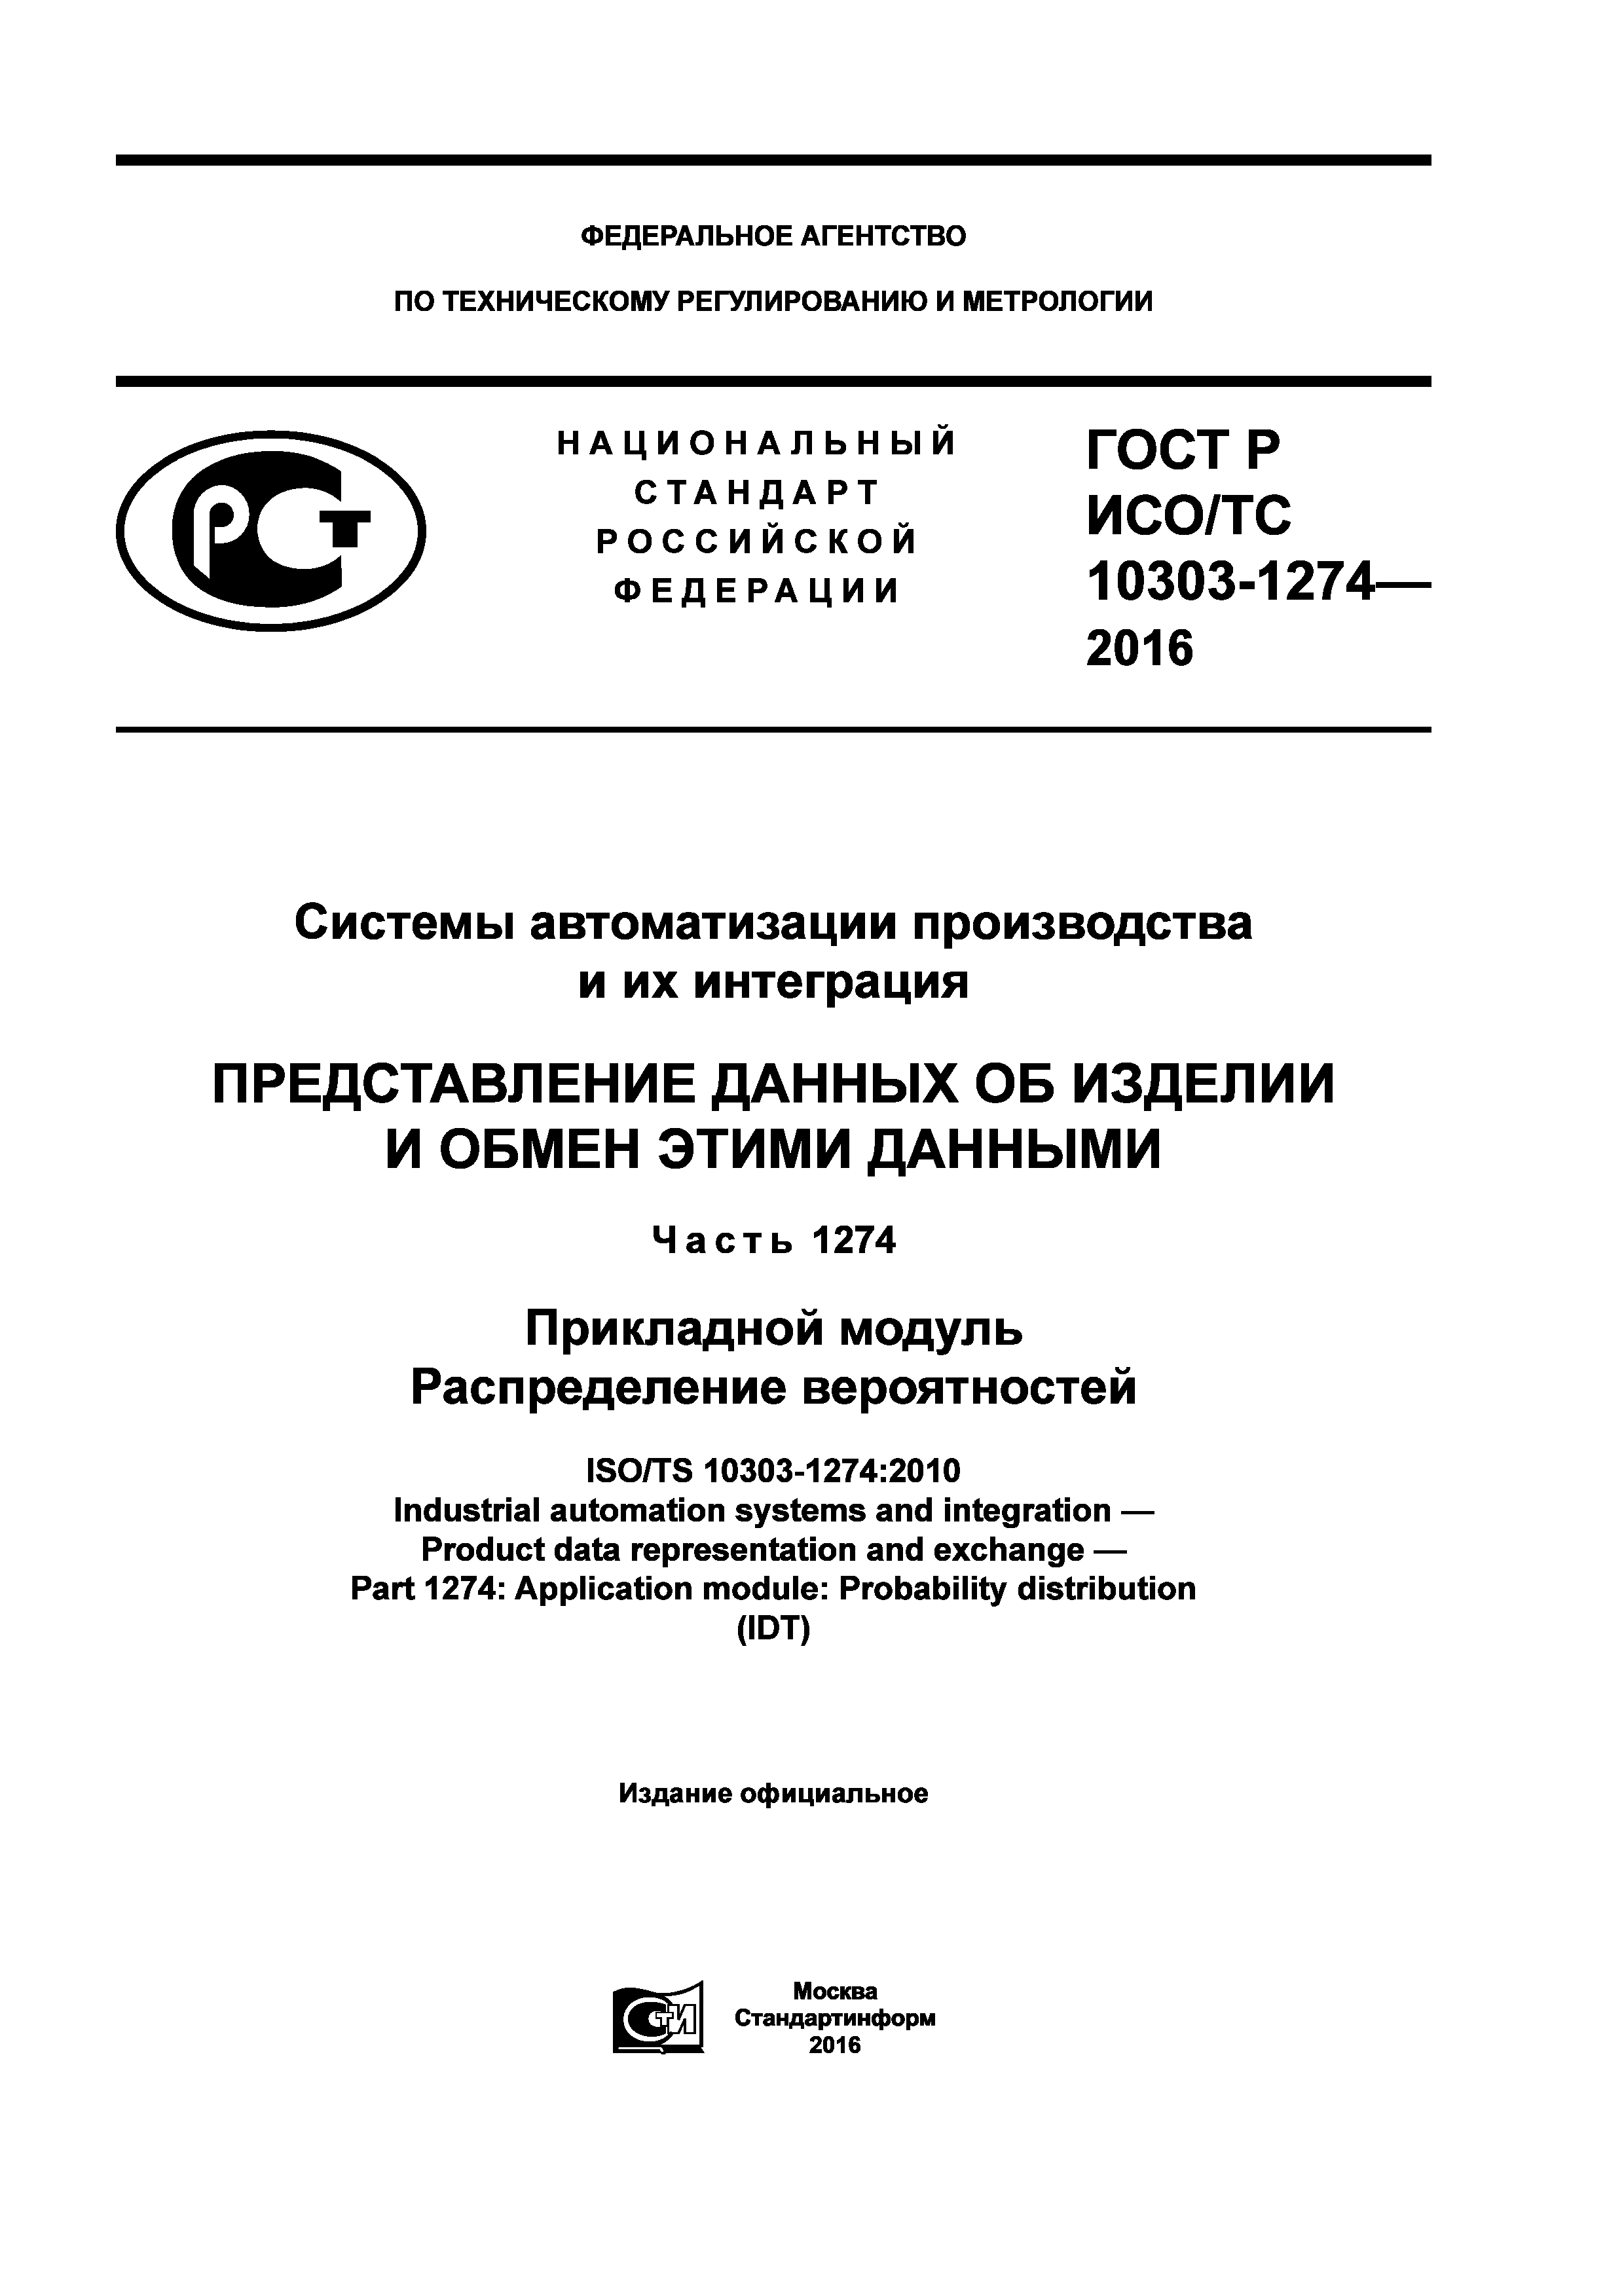 ГОСТ Р ИСО/ТС 10303-1274-2016